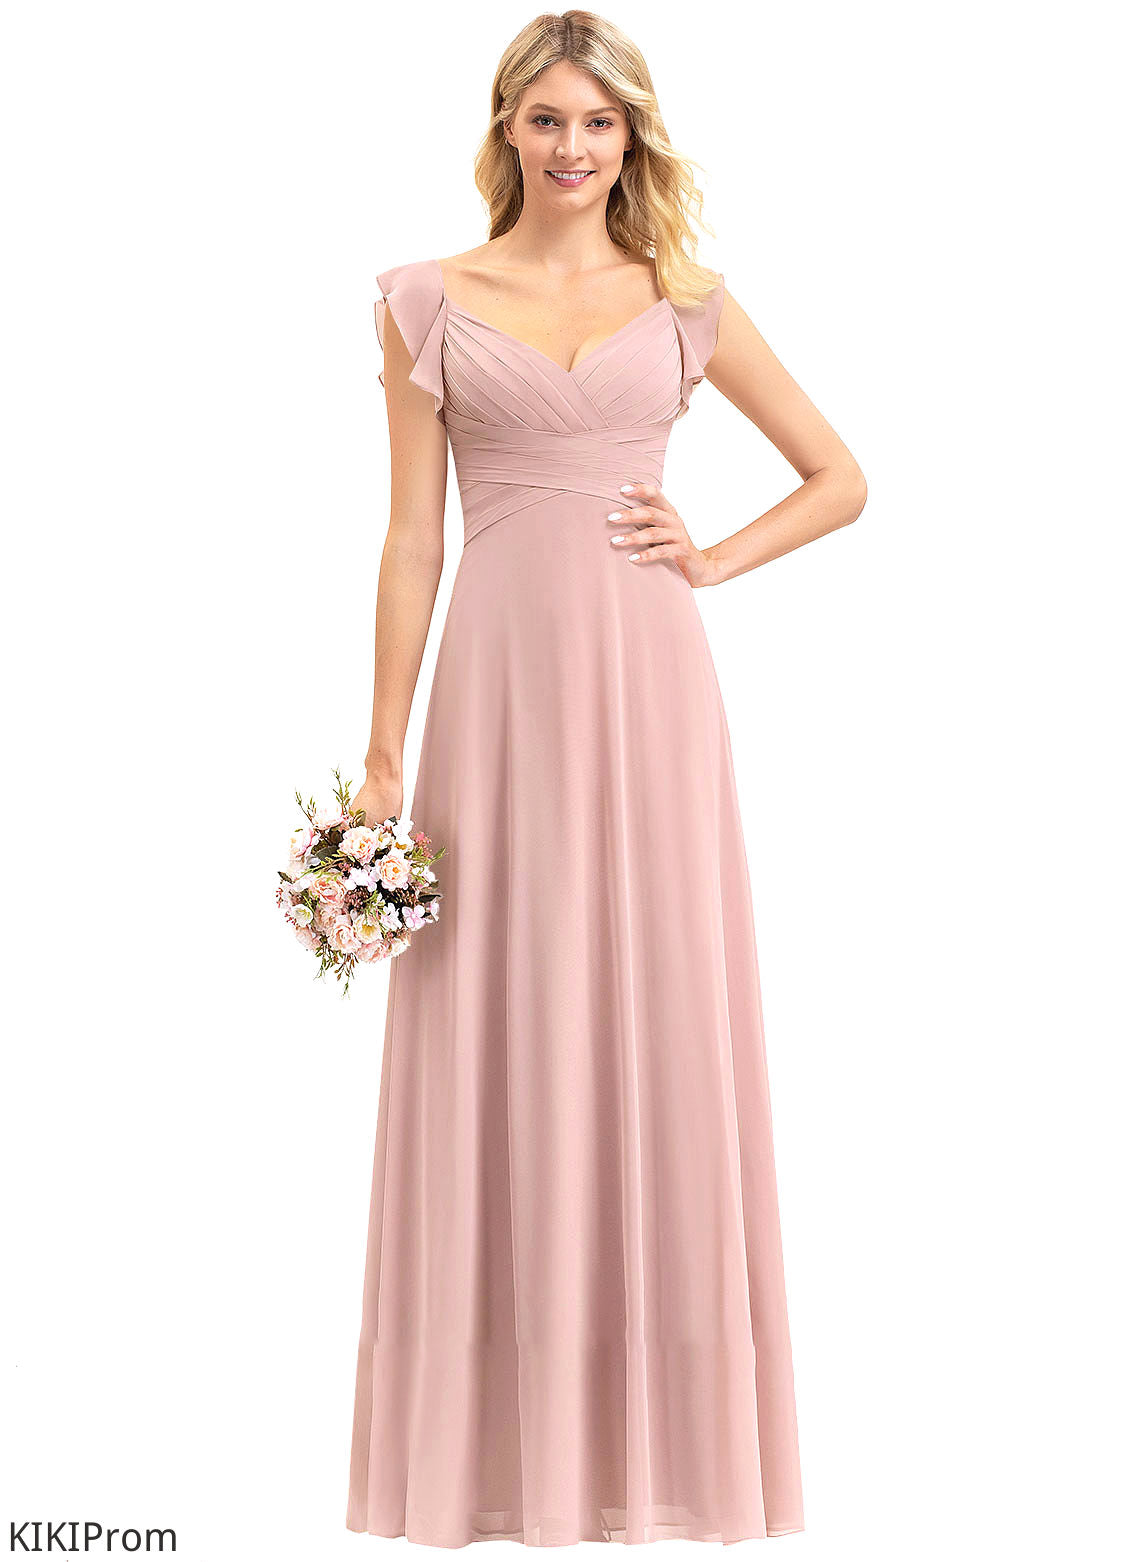 V-neck Silhouette CascadingRuffles Embellishment Length Fabric Empire Neckline Floor-Length Skyla Bridesmaid Dresses